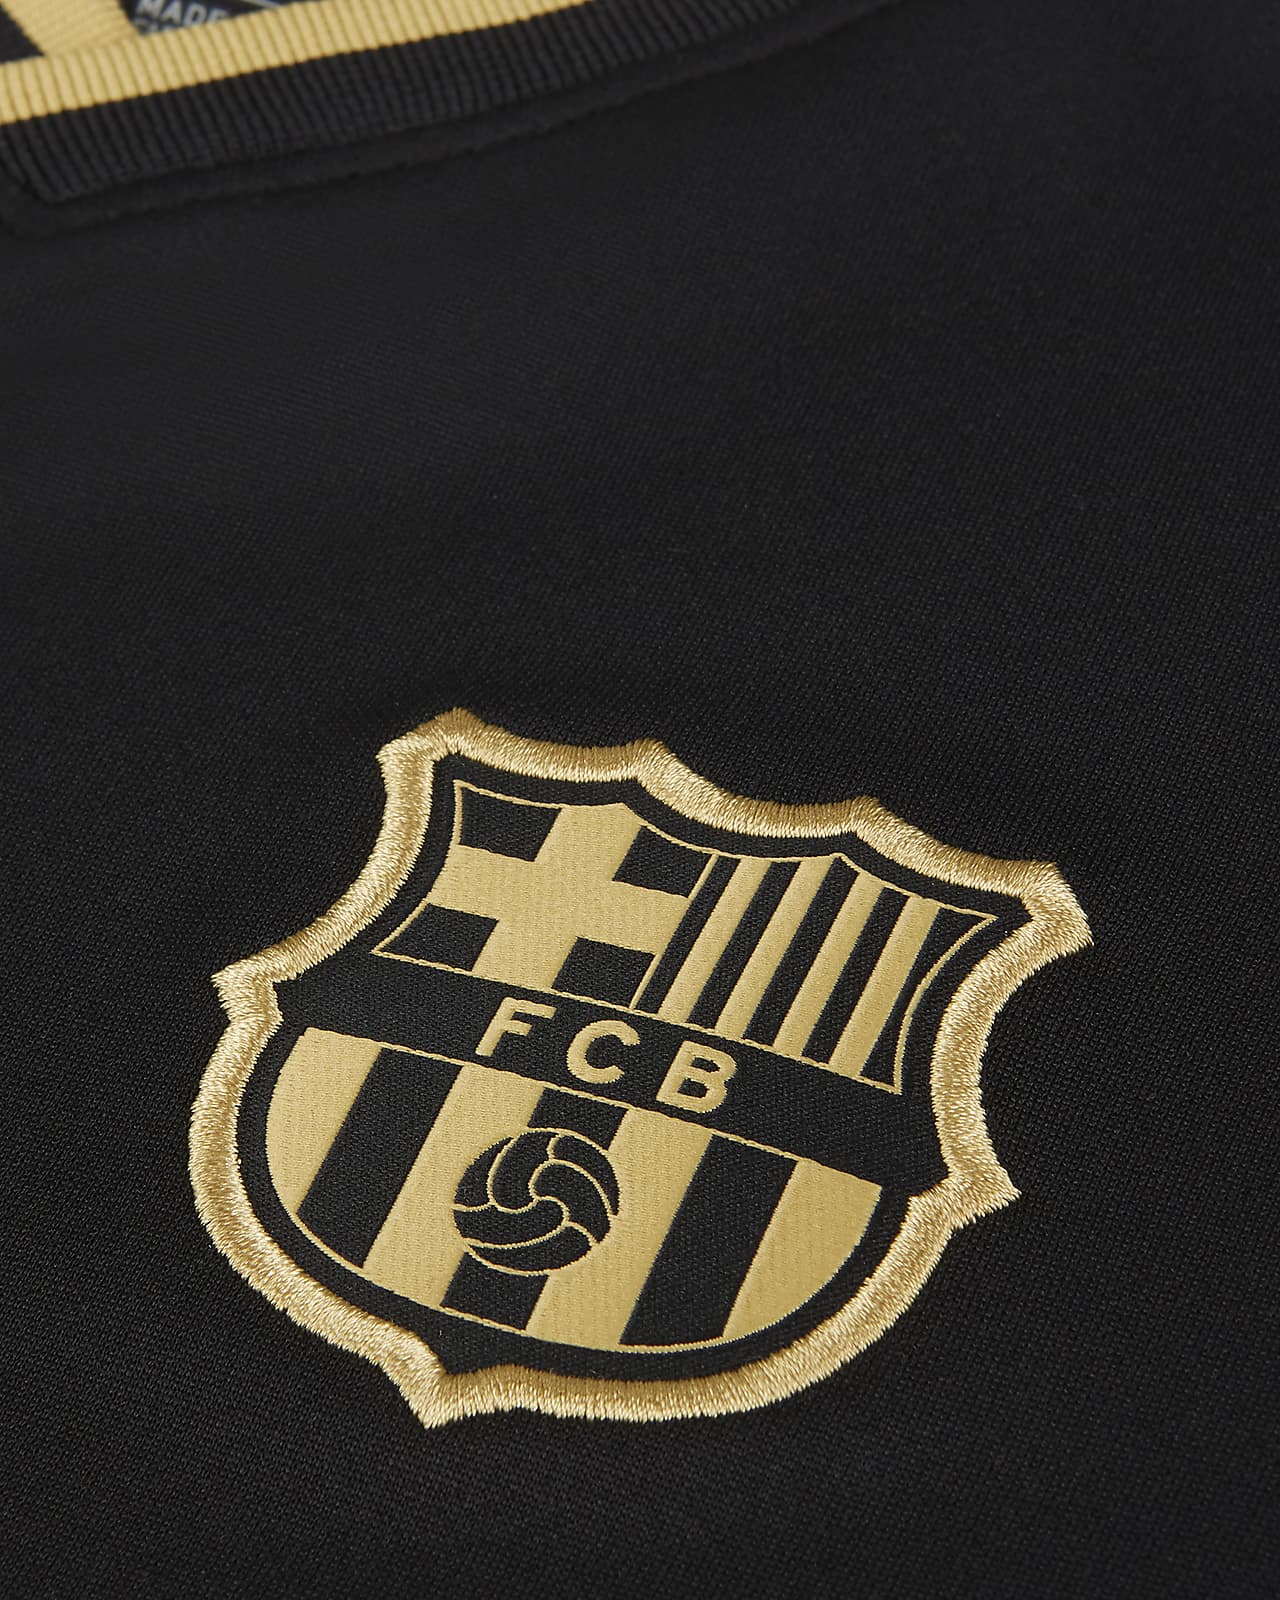 Nike公式 Fc バルセロナ 21 スタジアム アウェイ ジュニア サッカーユニフォーム オンラインストア 通販サイト